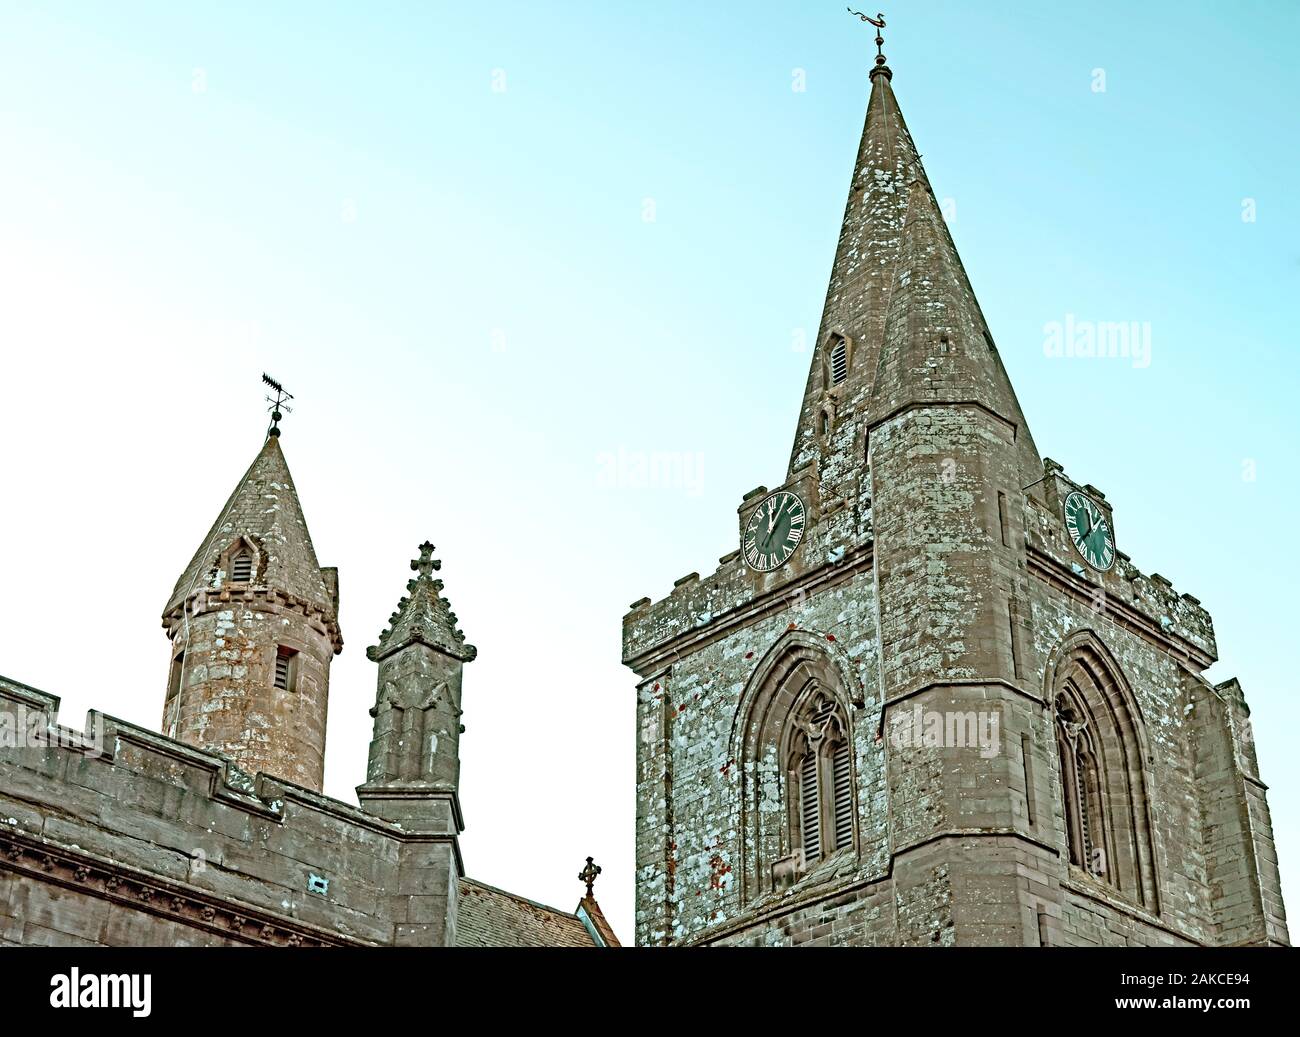 Grande tour carrée et d'horloge de la cathédrale de Brechin, Angus, Scotland, UK. avec arch fenêtres gothiques & rare style irlandais tour ronde en arrière-plan,. Banque D'Images